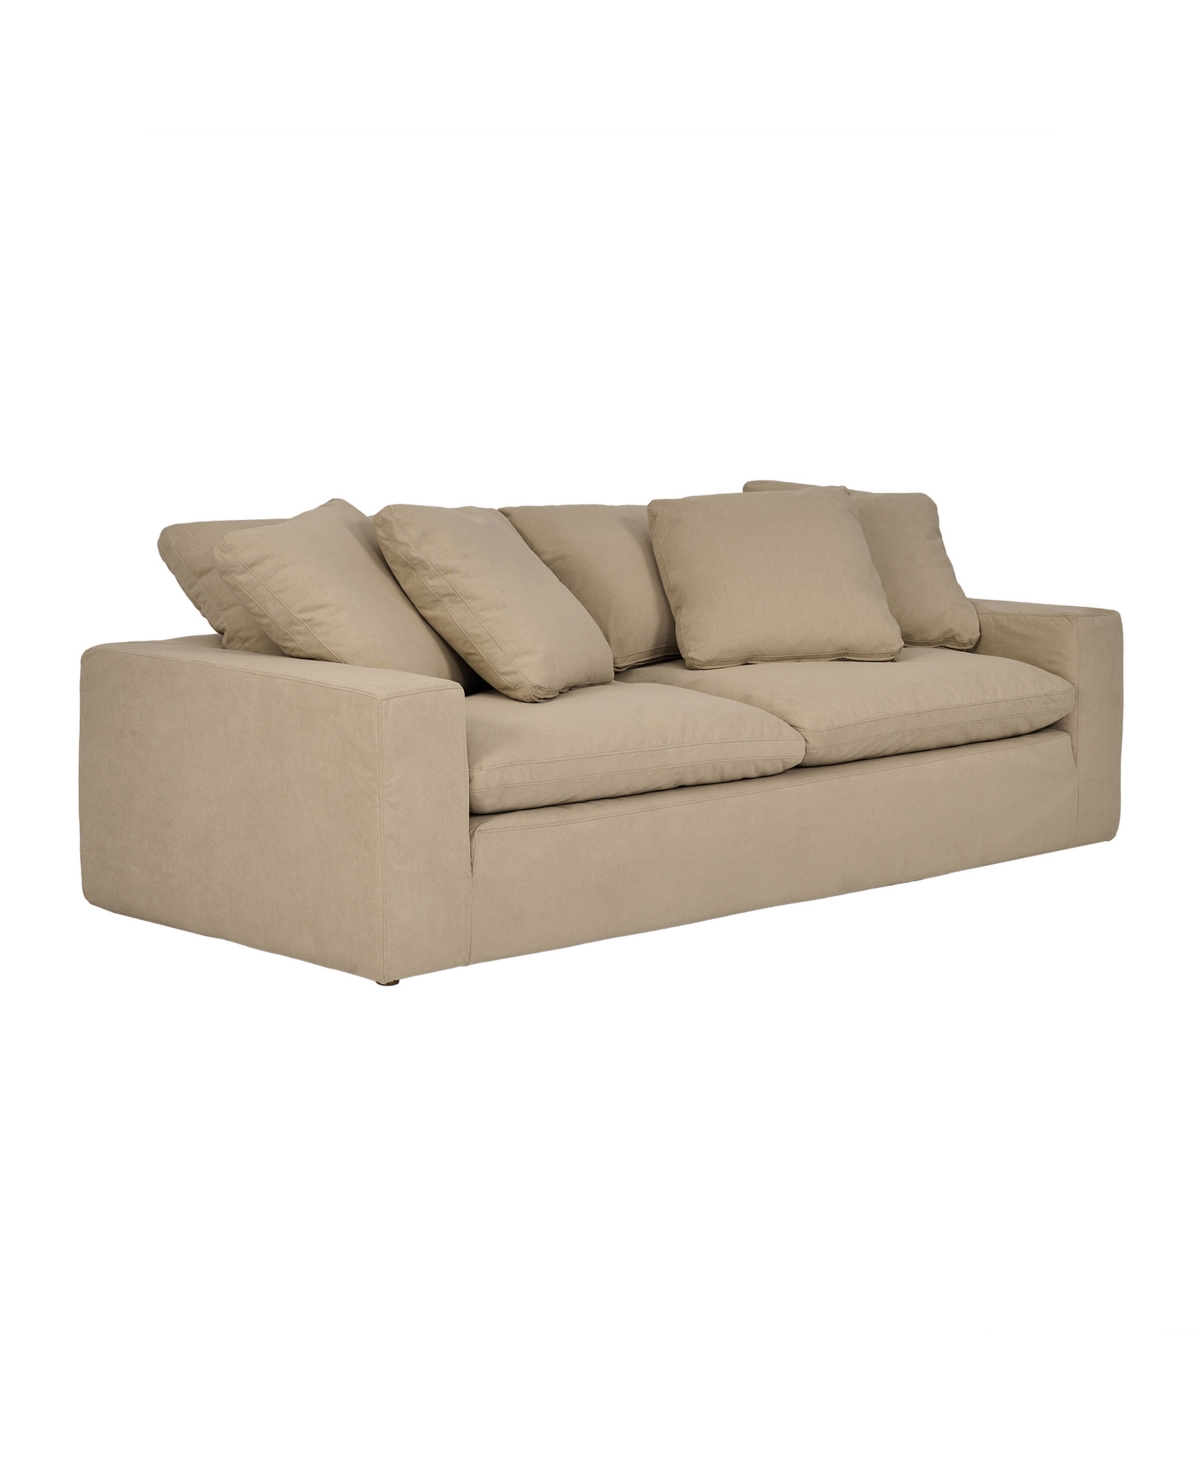 Armen Living Liberty 96.5" Upholstered Sofa In Sahara Brown,brown